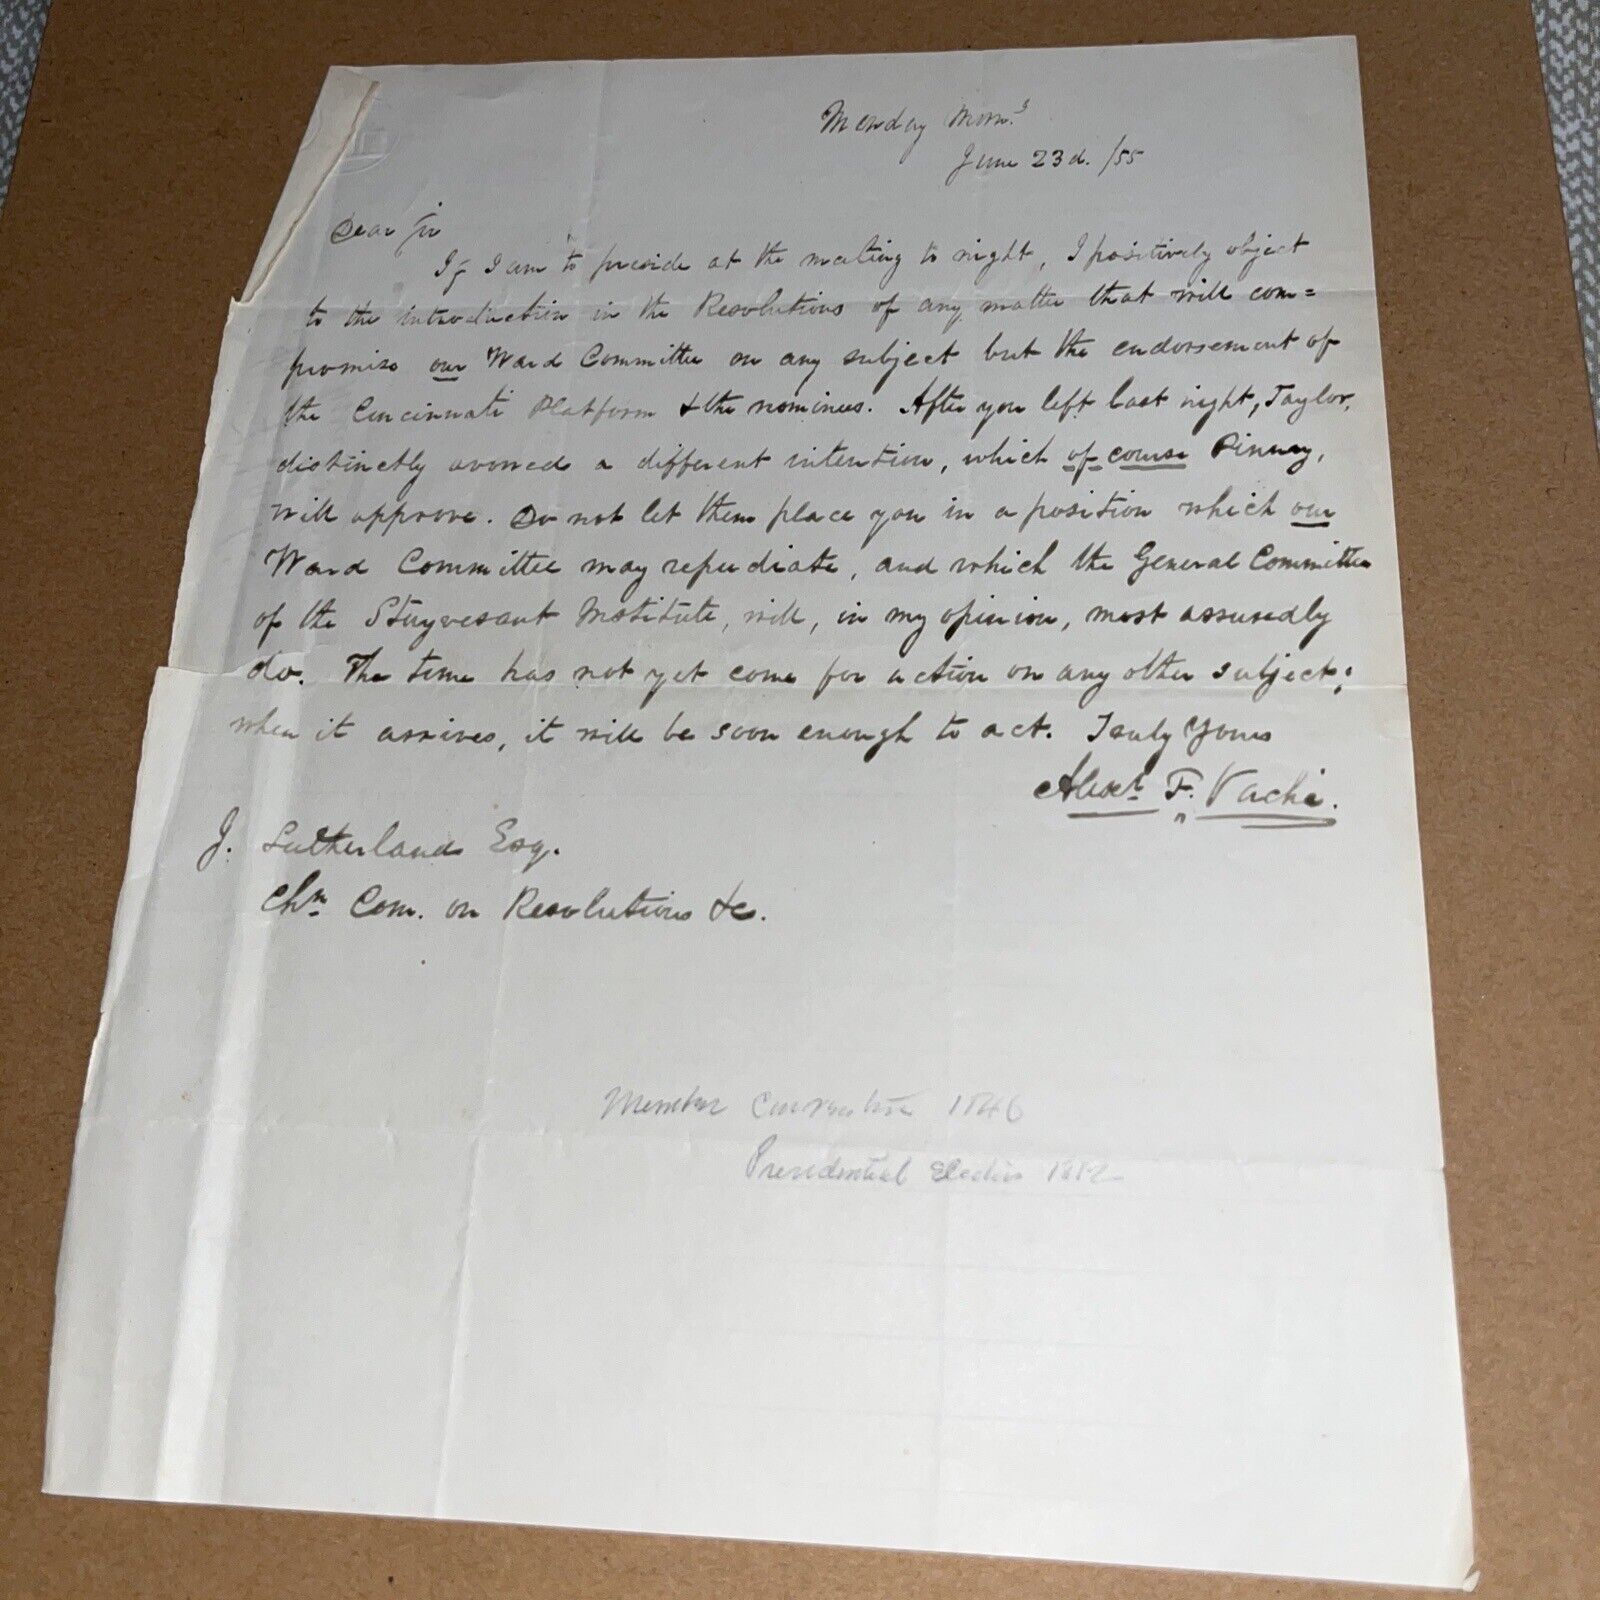 1855 Letter On Resolutions, Pro Endorsement of Cincinnati Platform Democrats